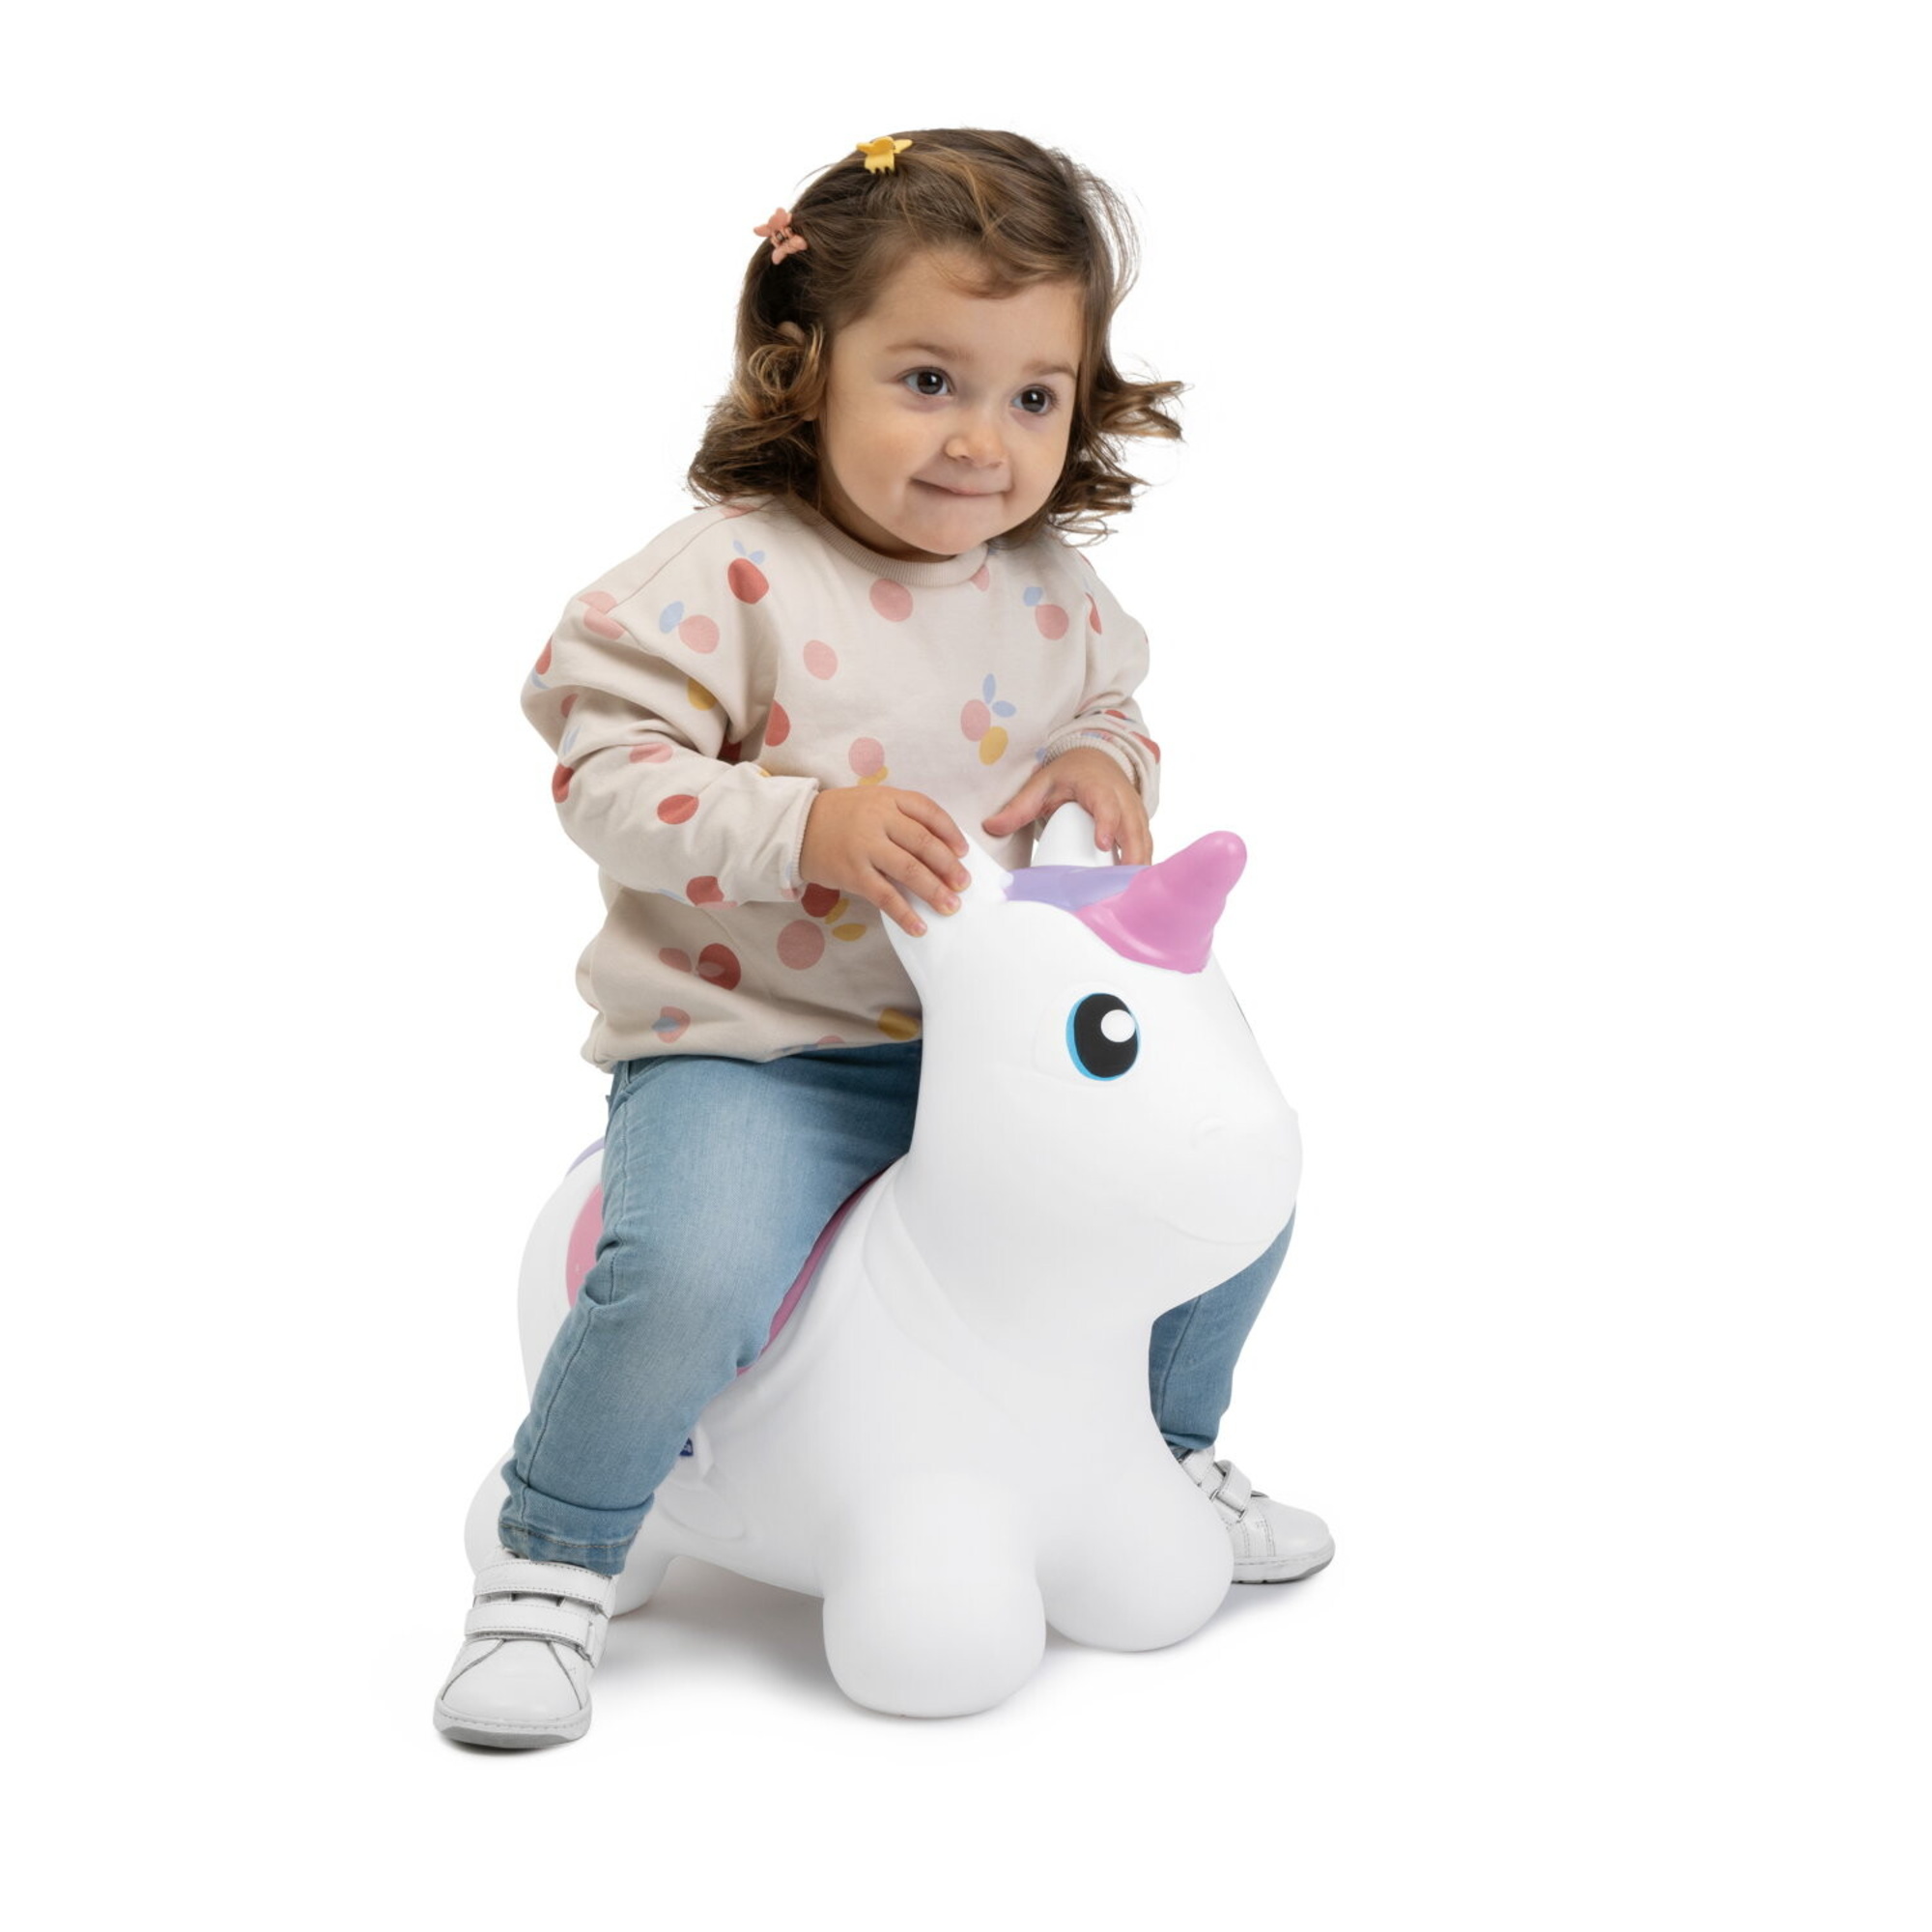 Bouncy unicorno, linea fit & fun, 2 – 5 anni - chicco - Chicco